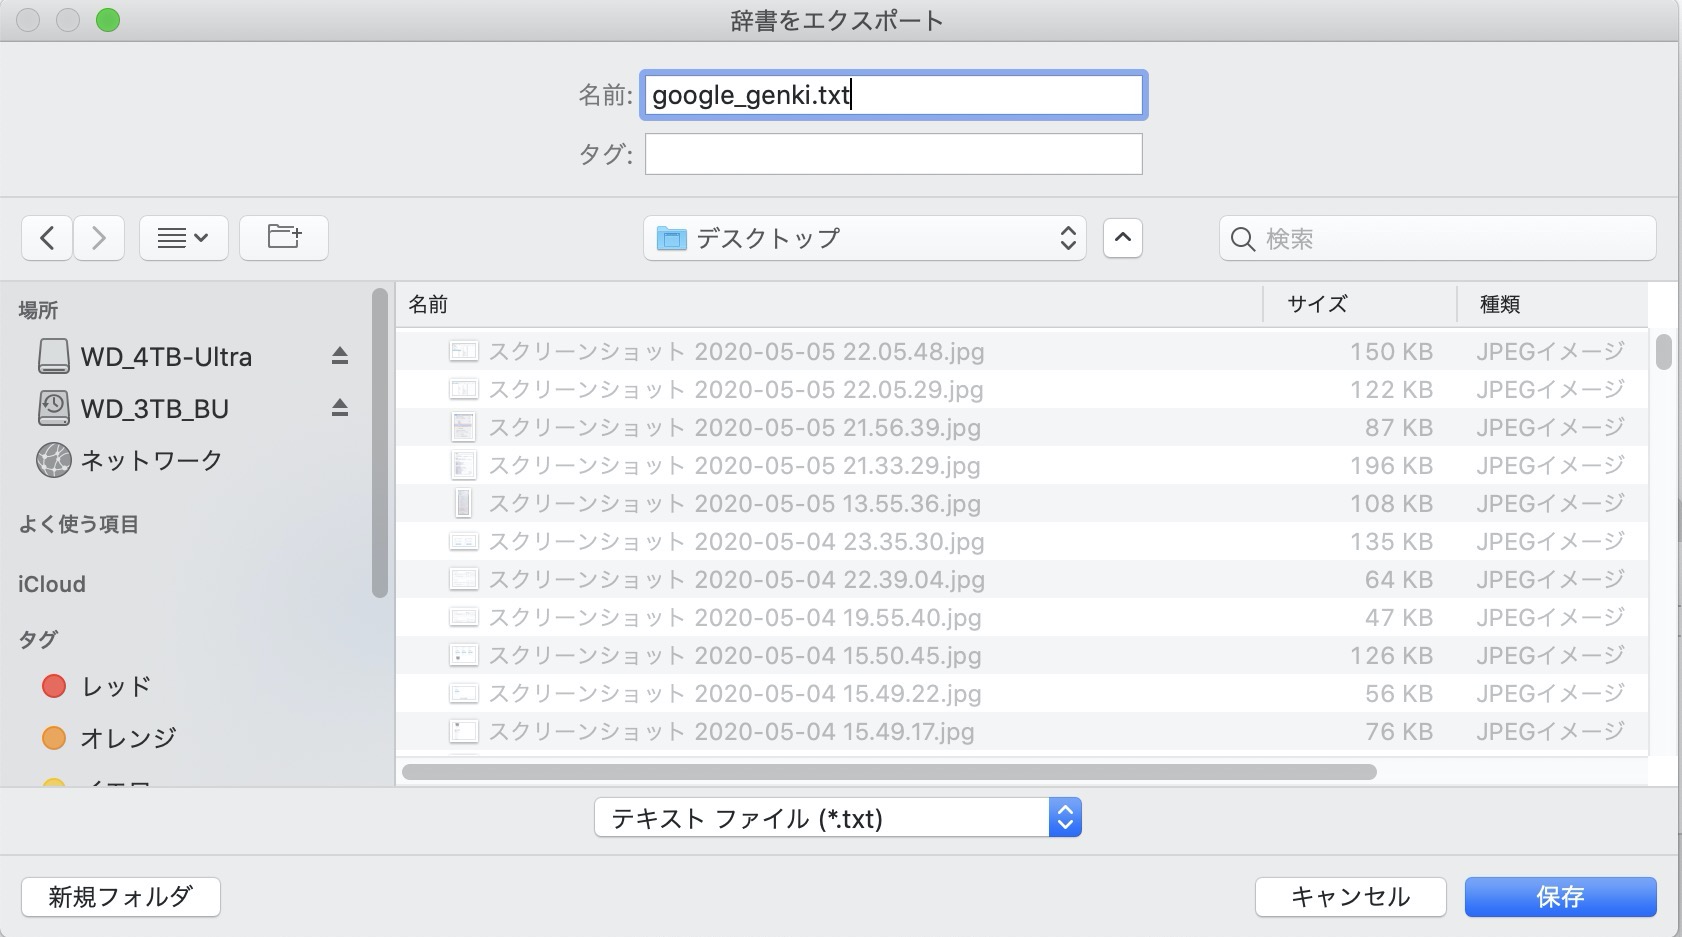  MacのGoogle日本語入力のユーザ辞書を他のMacから移行する方法【サジェスト｜PC｜学習機能｜設定】 Mac 